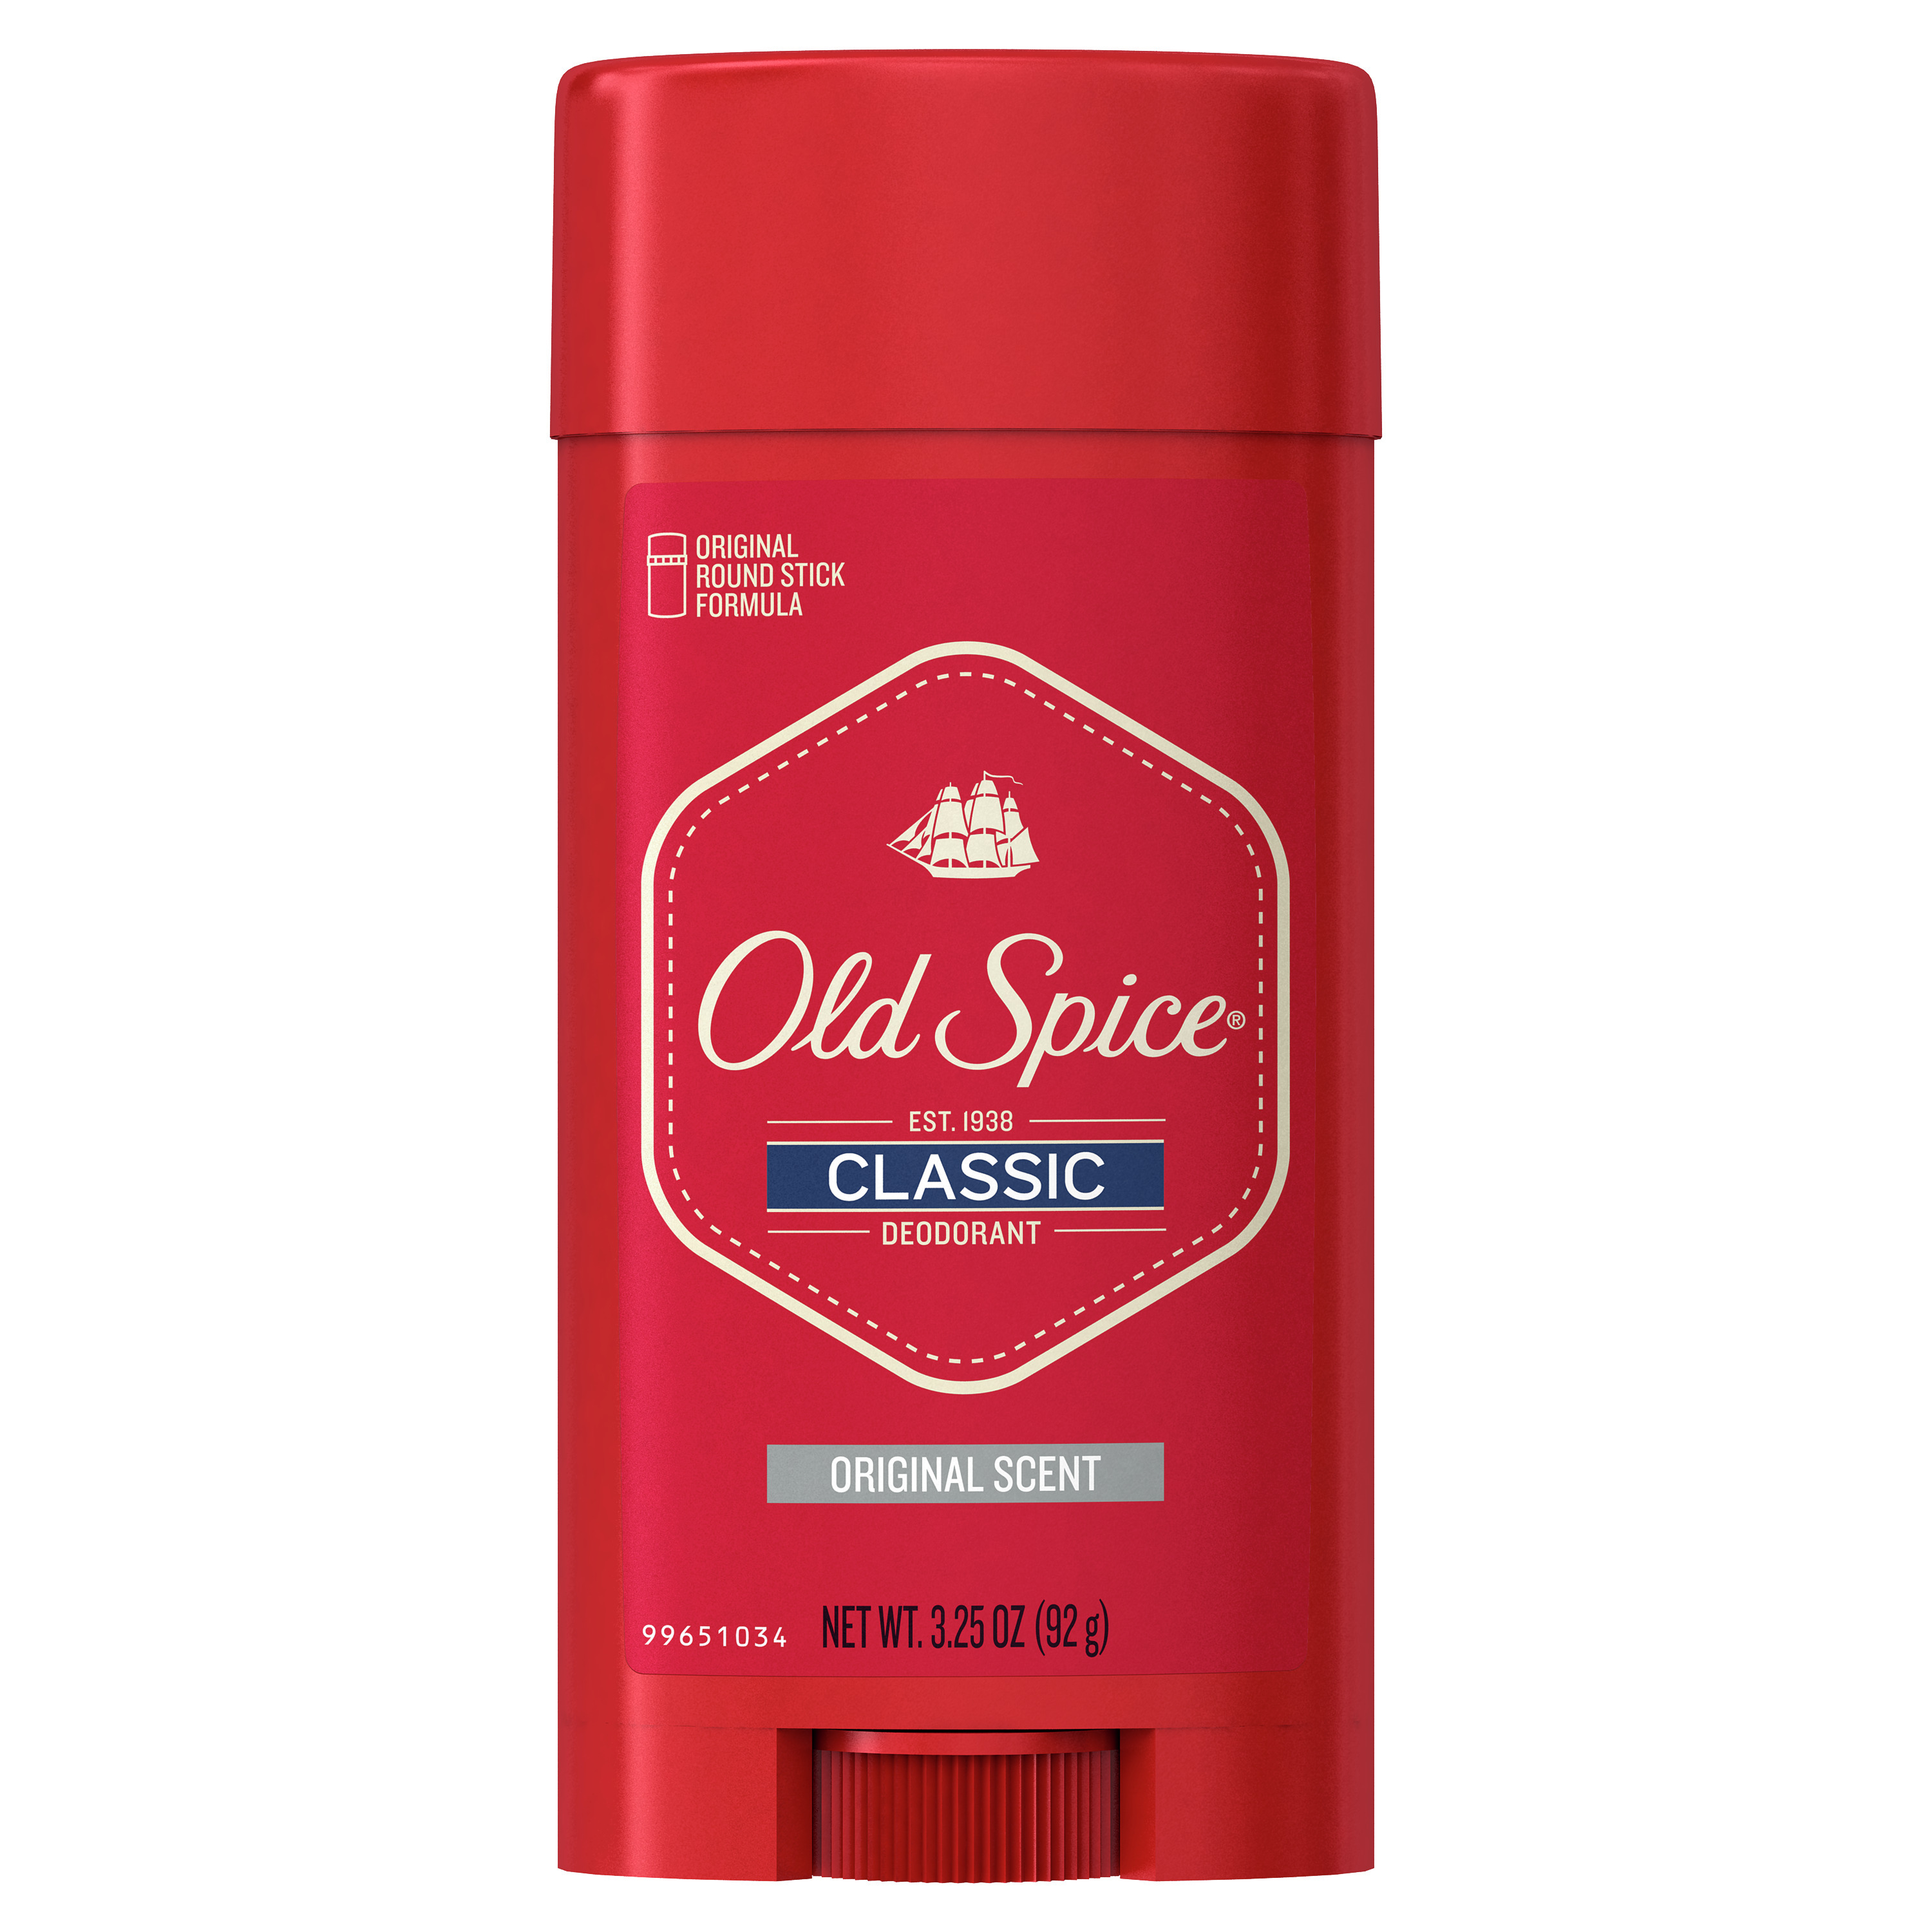 Old Spice Classic Deodorant for Men, Original Scent, 3.25 oz - image 1 of 6